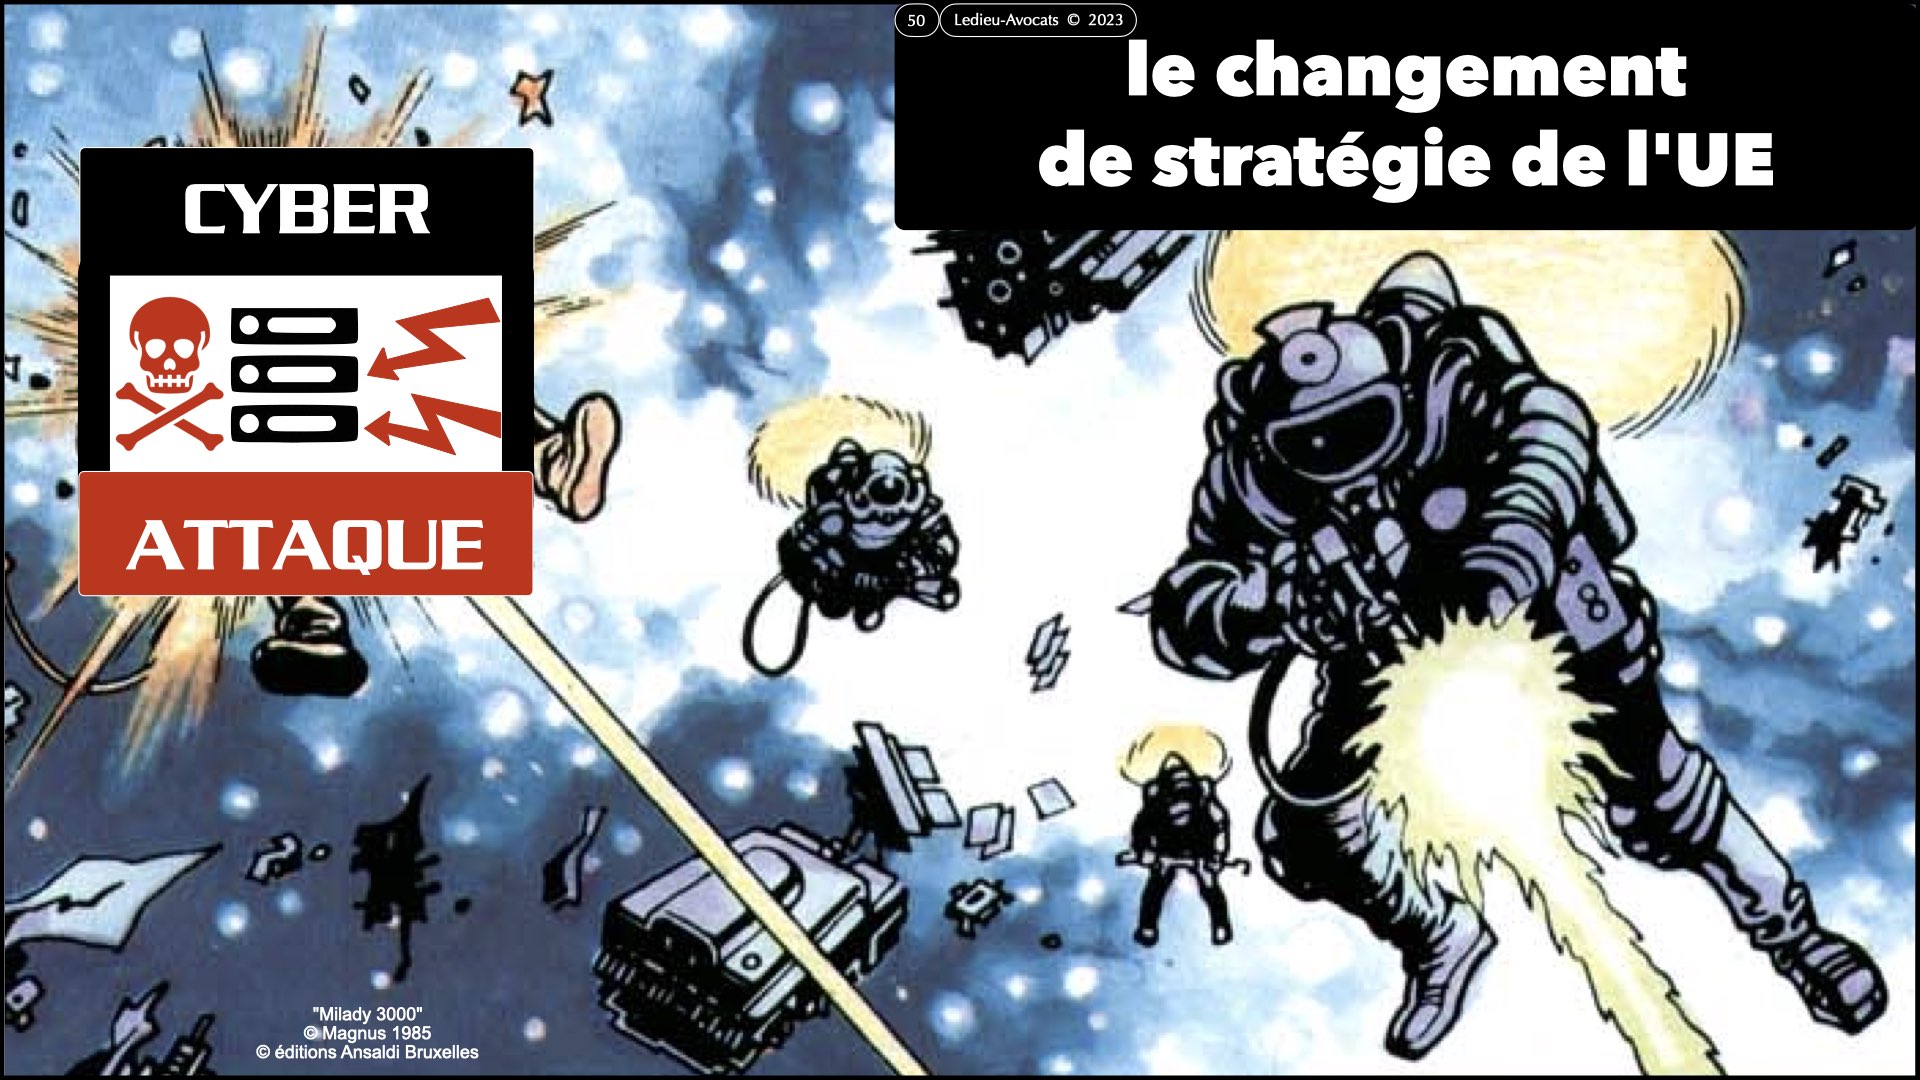 #522 la menace cyber expliquée aux Experts-Comptables ECF Ile de France 30 novembre 2023 © Ledieu-Avocats 2023.050